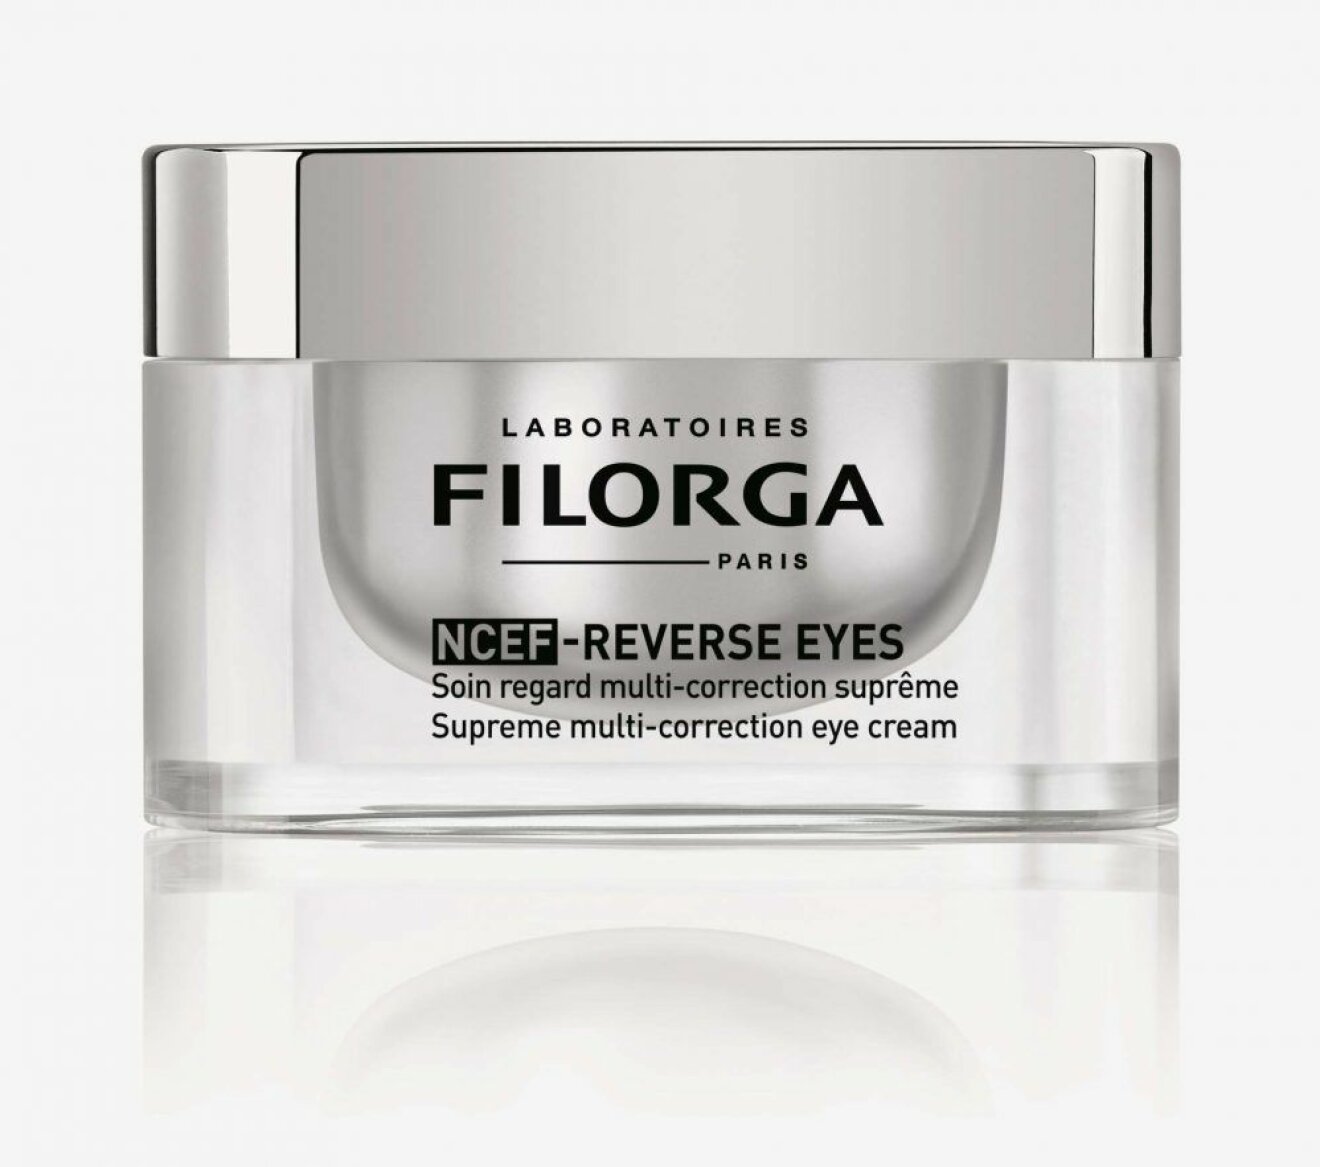 NCEF-Reverse Eyes från Filorga.